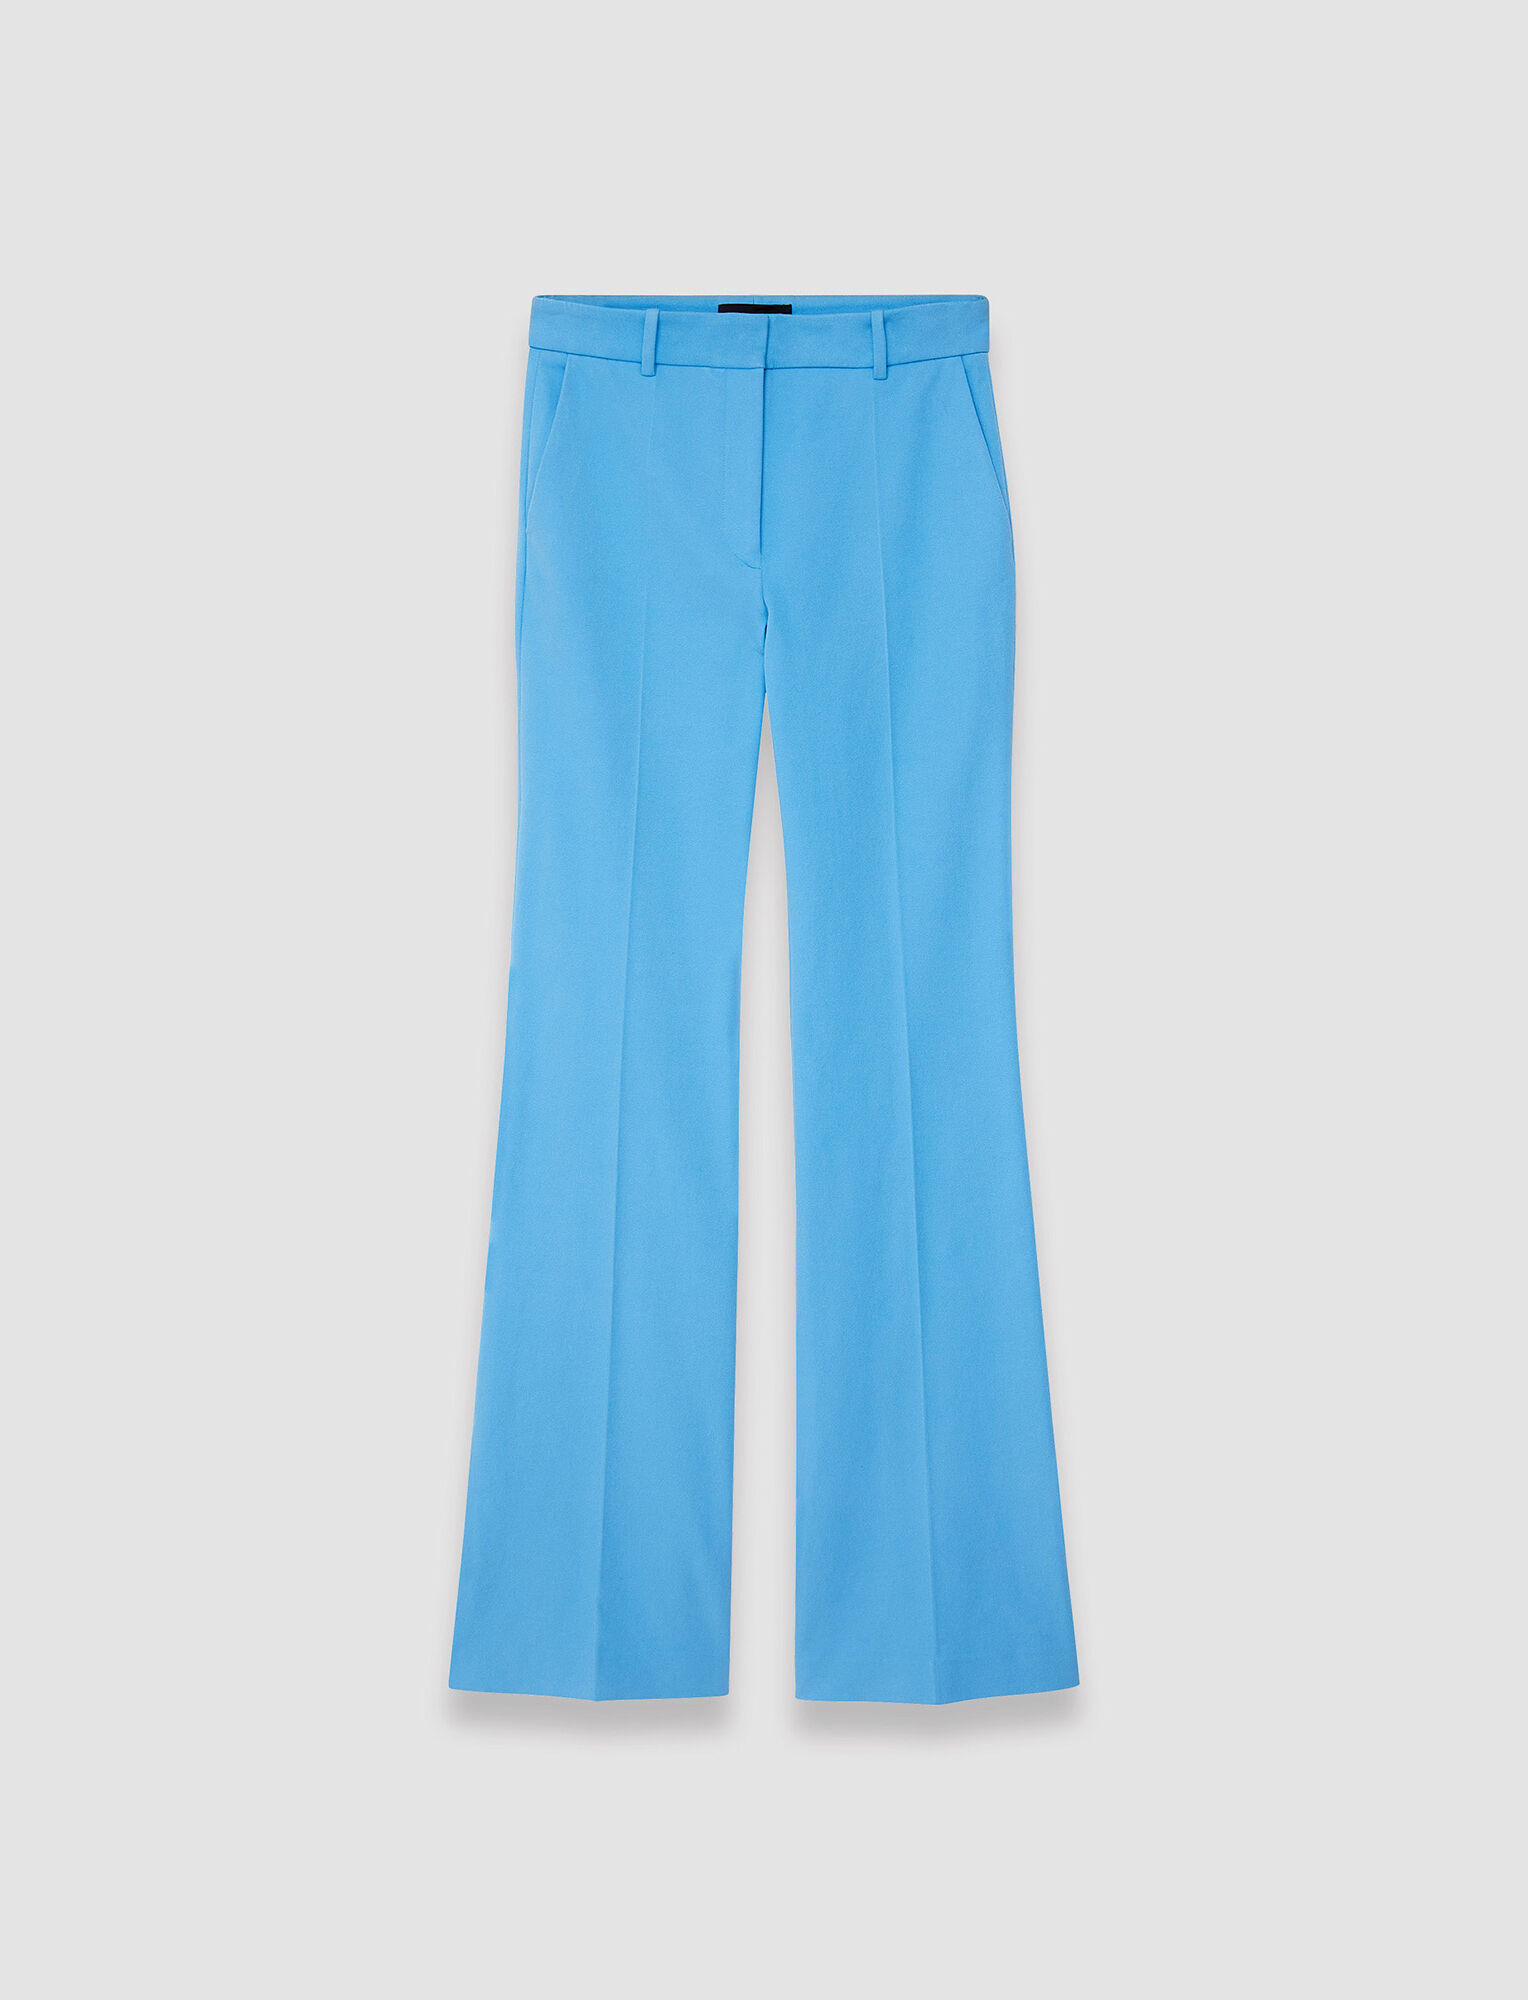 Gabardine Stretch Tafira Trousers in Blue